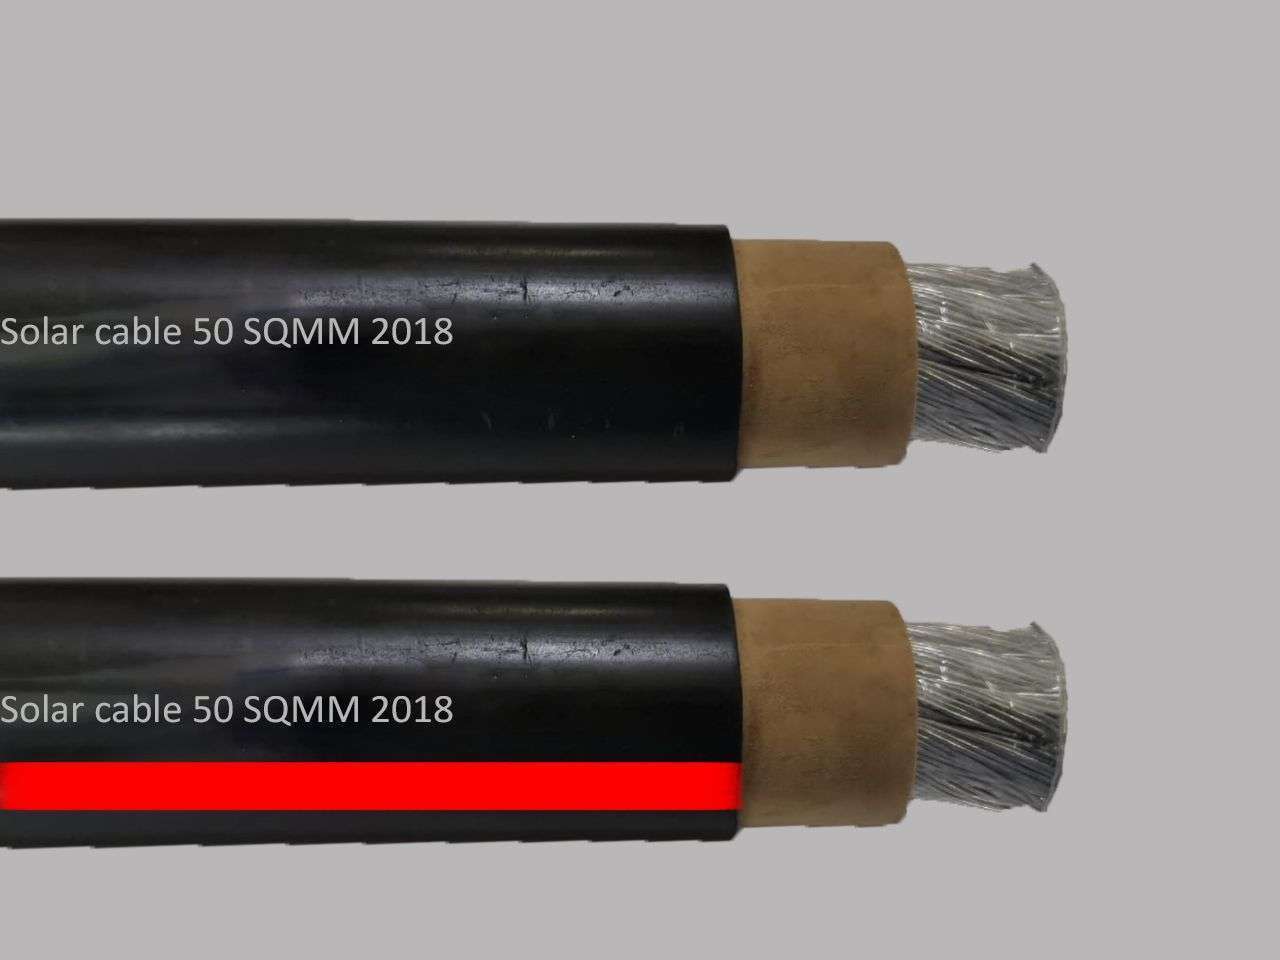 apar-solar-cable-50-sq.m-500m-drum-atc-xlp-black_en.jpg